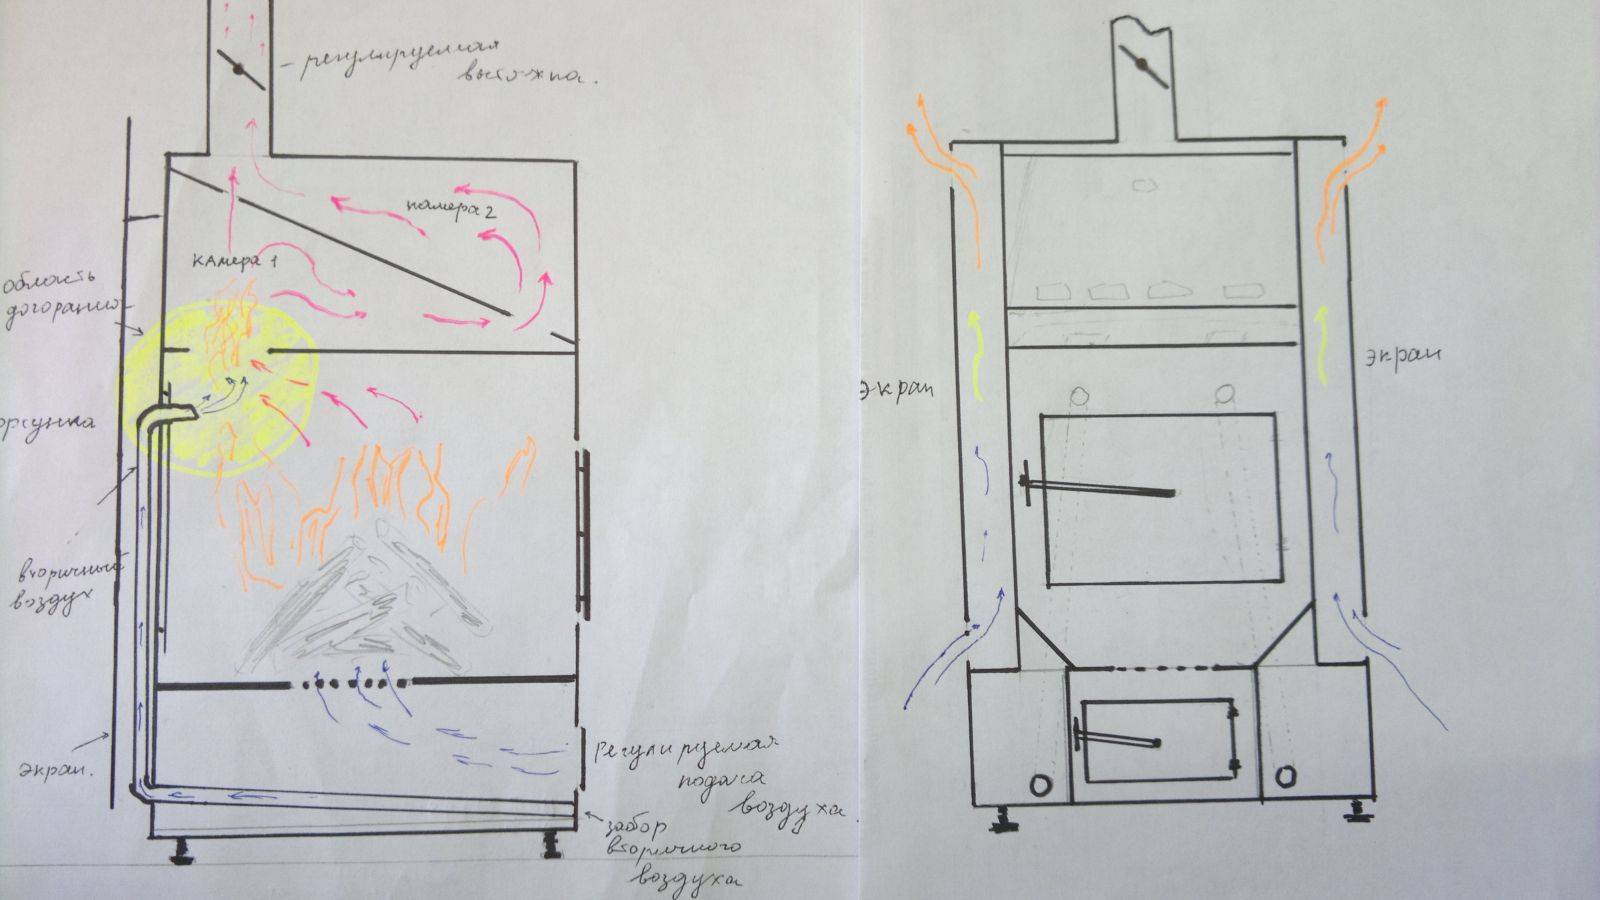 Как сделать эффективную буржуйку своими руками на дровах длительного горения для гаража или дома: чертежи и инструкция- обзор +видео